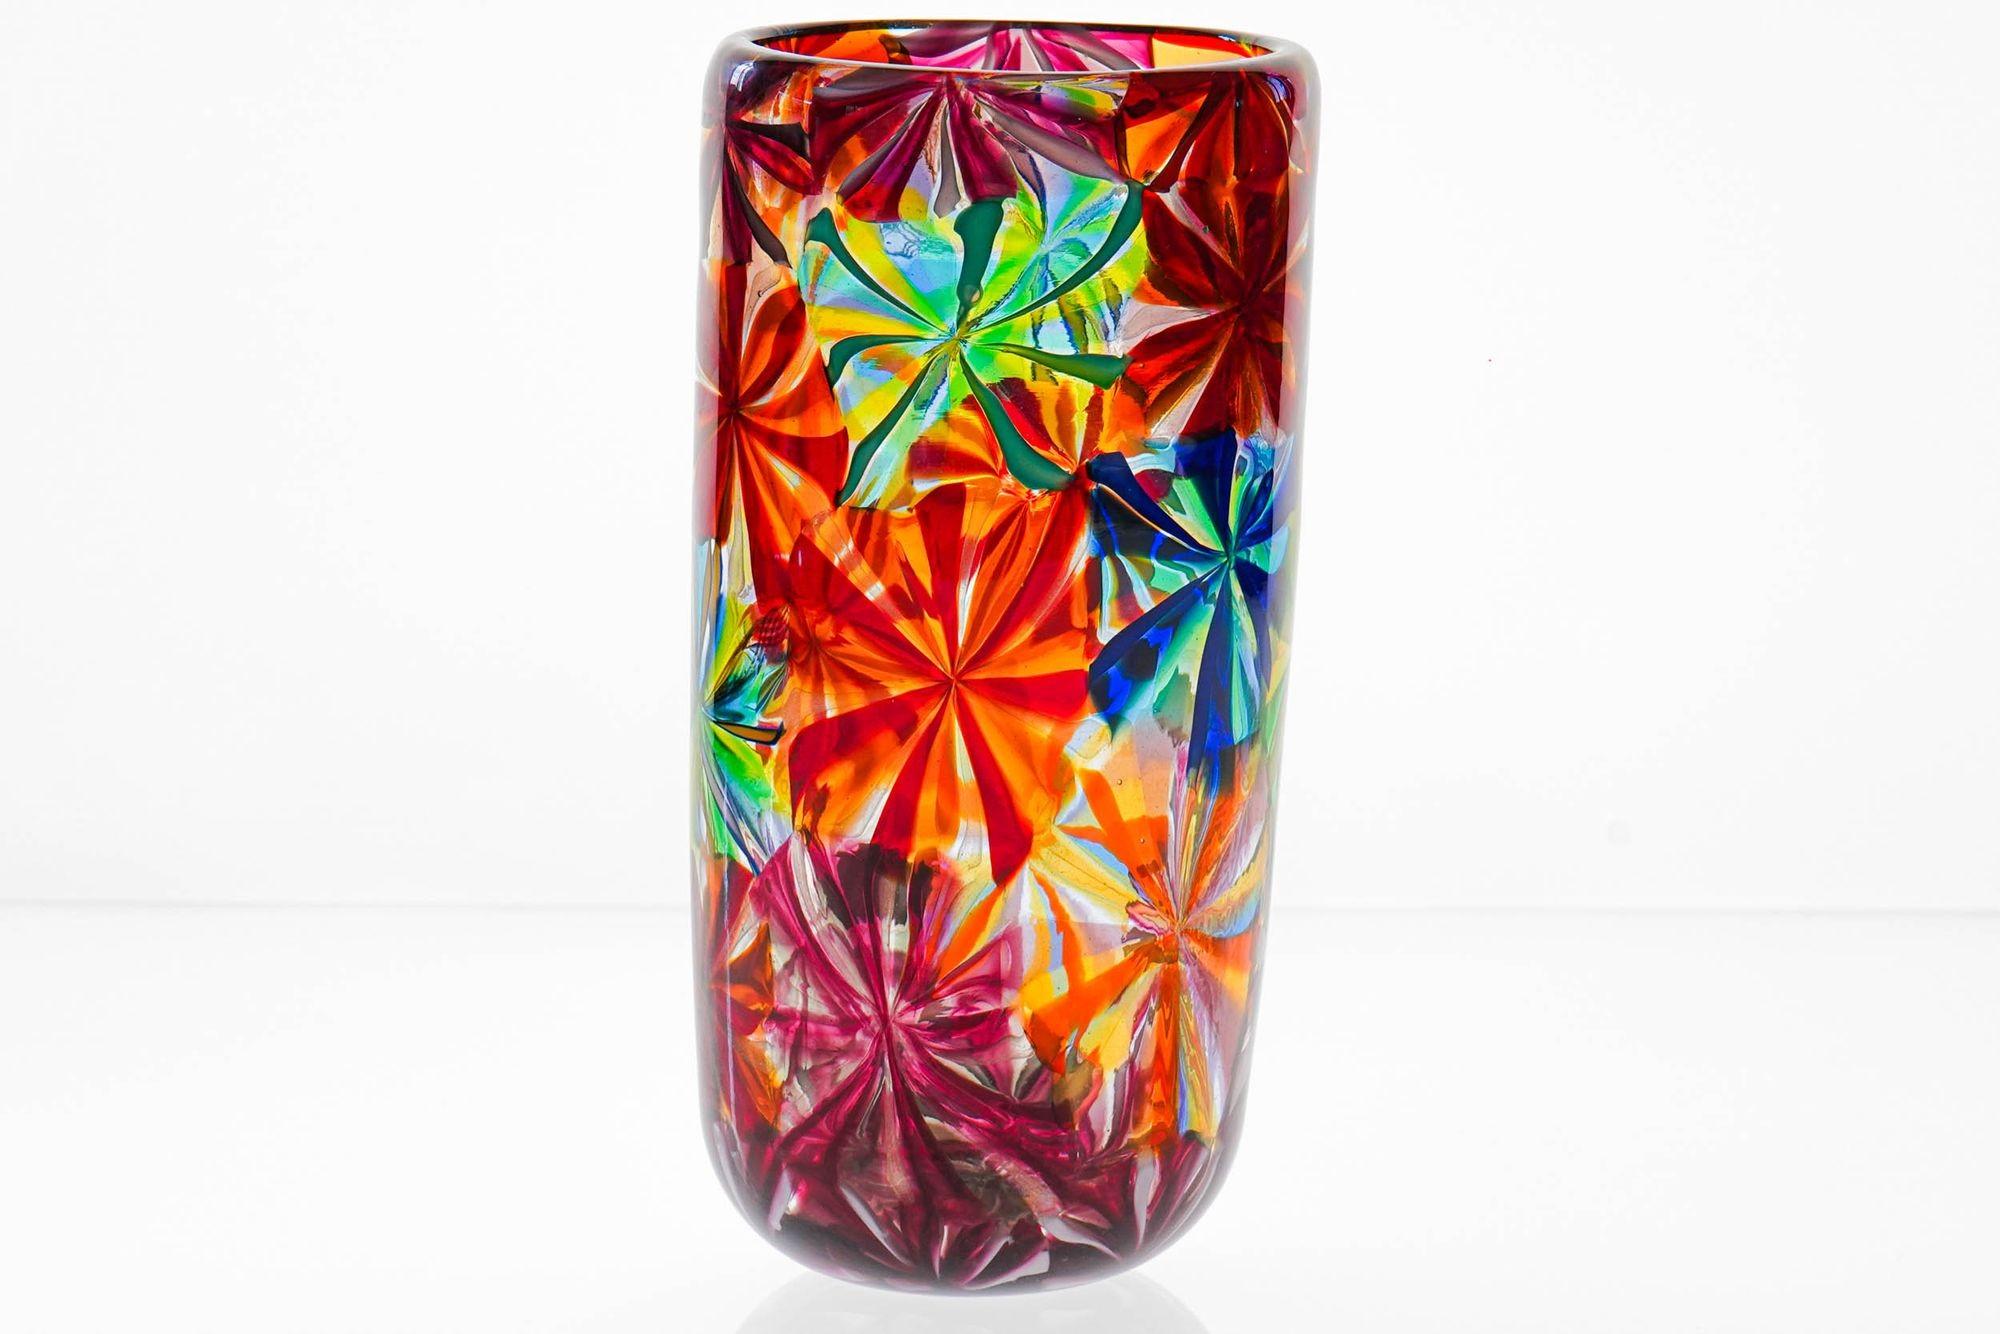 Magnifique vase en mosaïque de Murano avec une parfaite combinaison de couleurs et une technique de mosaïque complexe.

La finition stellato est obtenue en faisant rouler des cannes de différentes couleurs sur un petit bloc de verre incandescent. Le